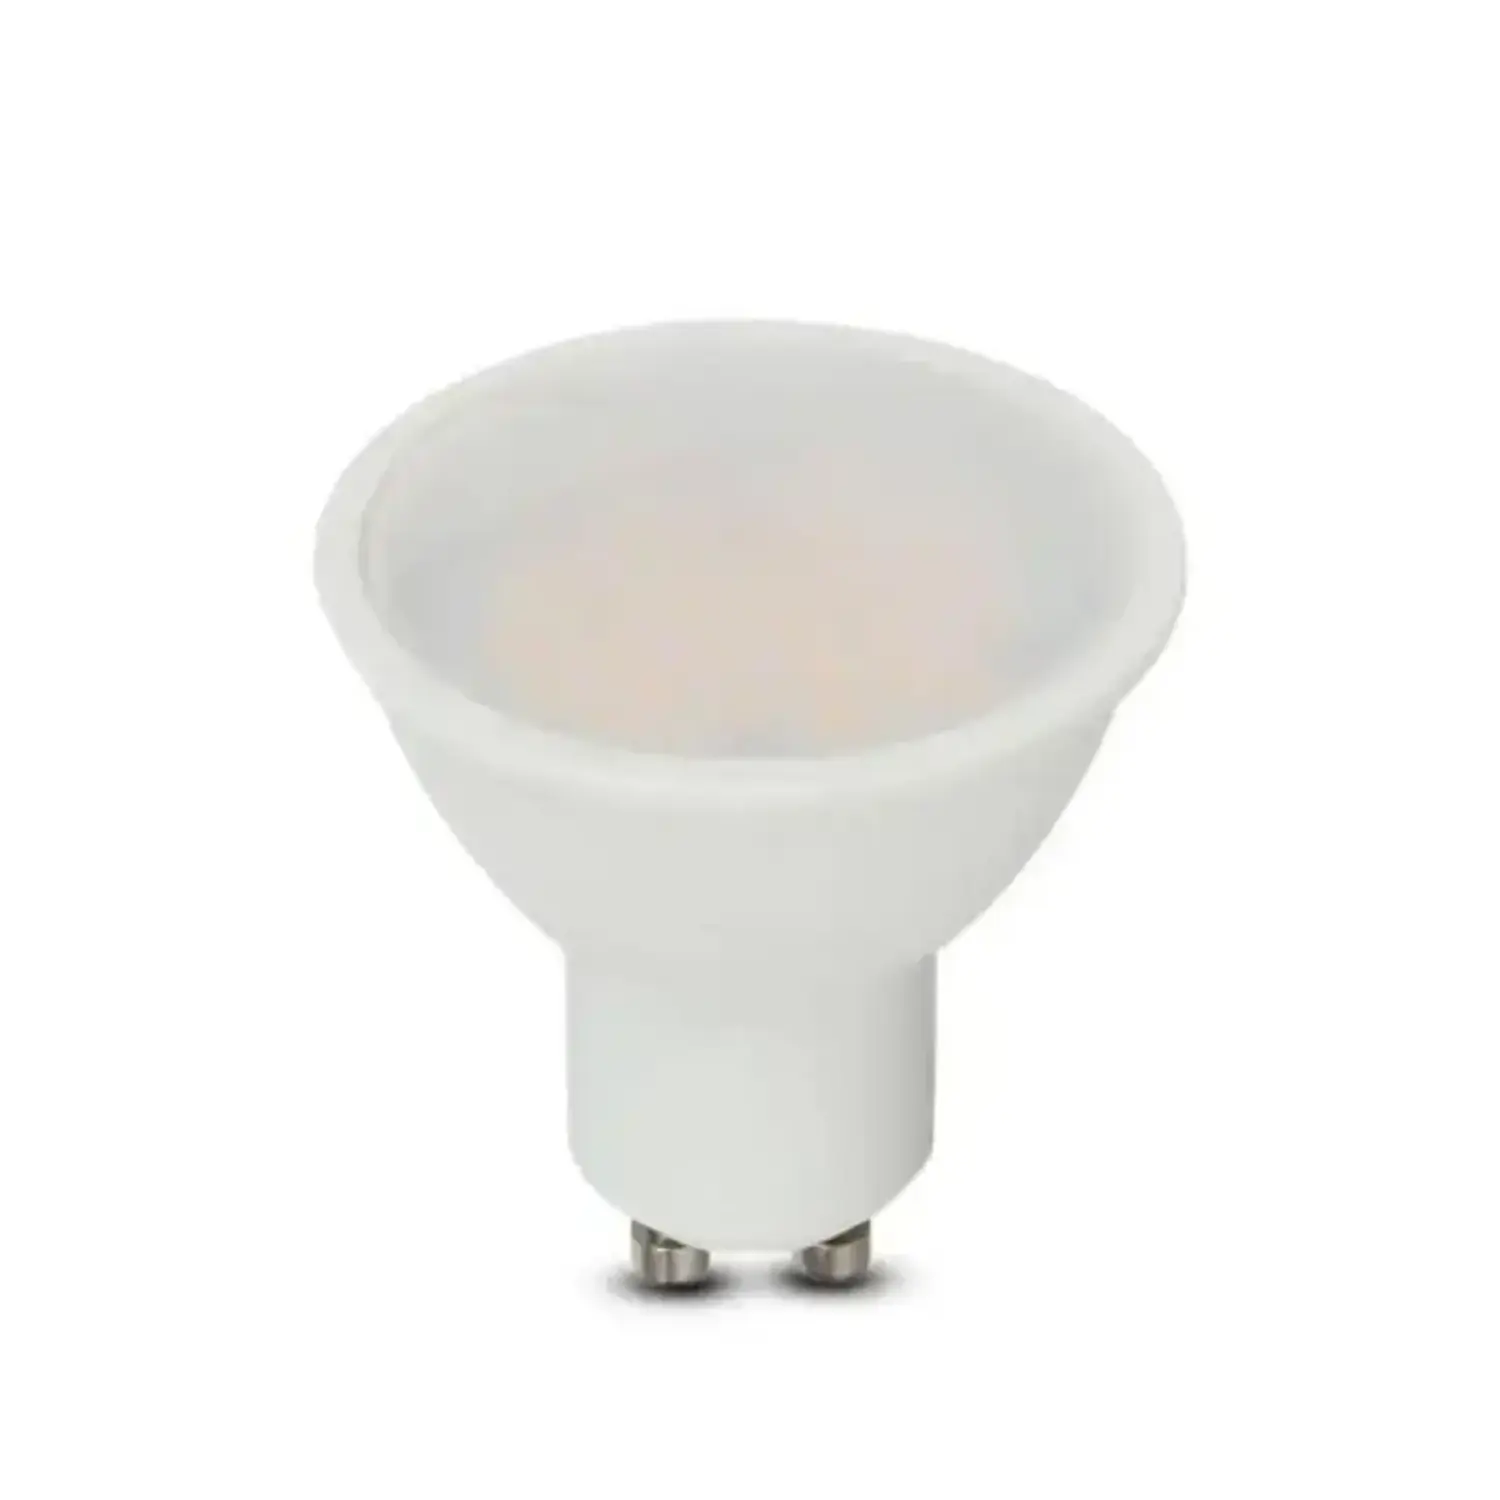 immagine del prodotto lampadina led chip samsung lampada faretto 10 watt bianco freddo